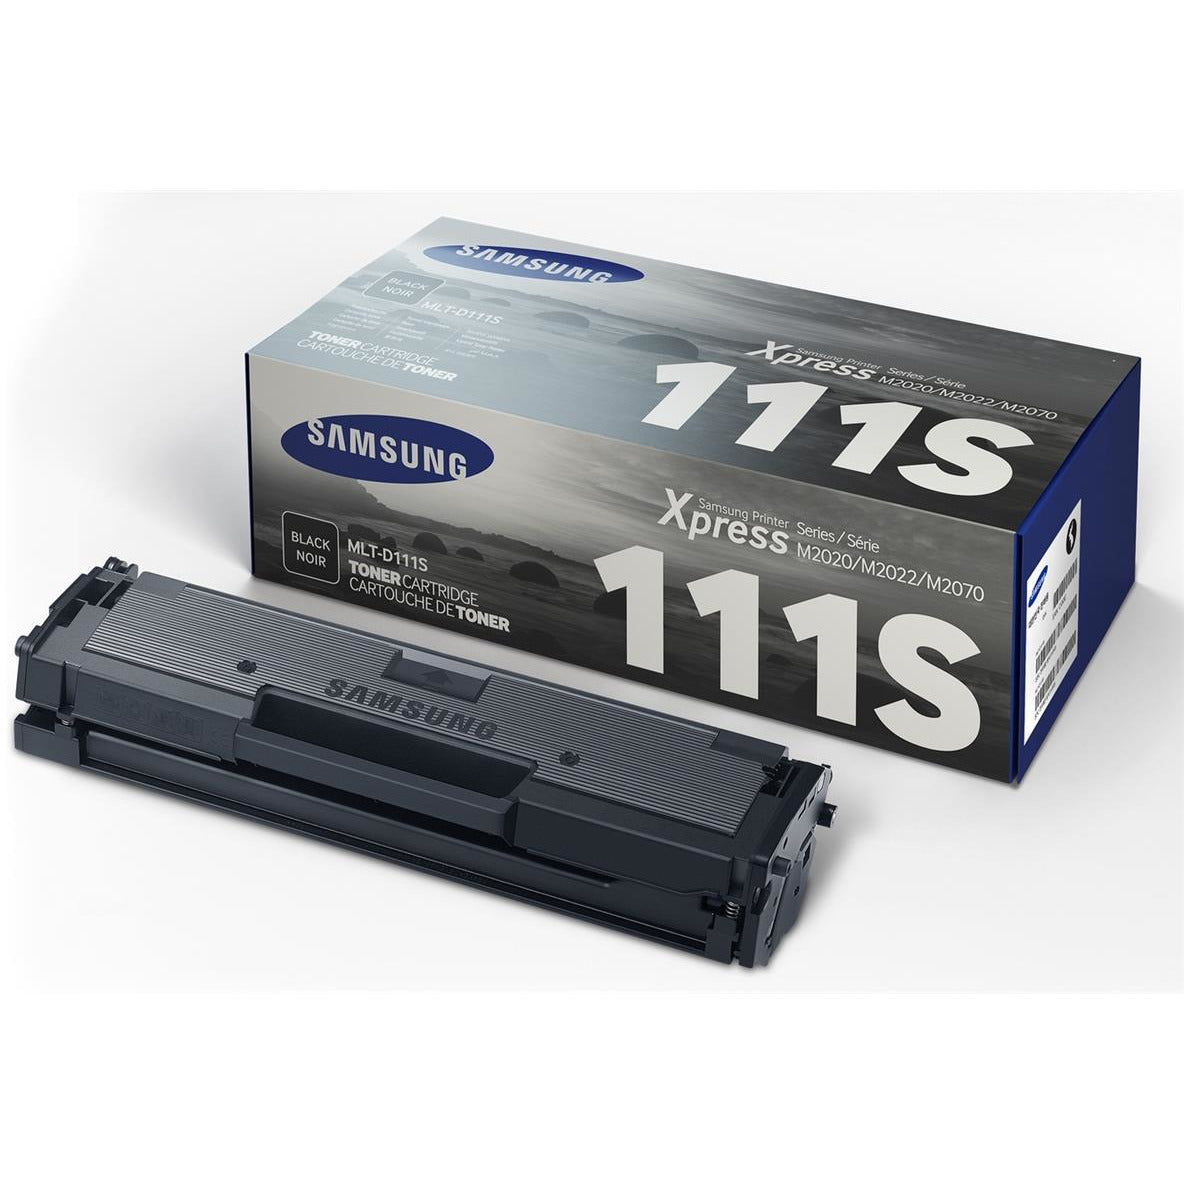 Samsung MLT-D111S (prentar 1000 síður) svart dufthylki fyrir Xpress M2022 Series/M2070 Series/M2020 Series Laser Printers